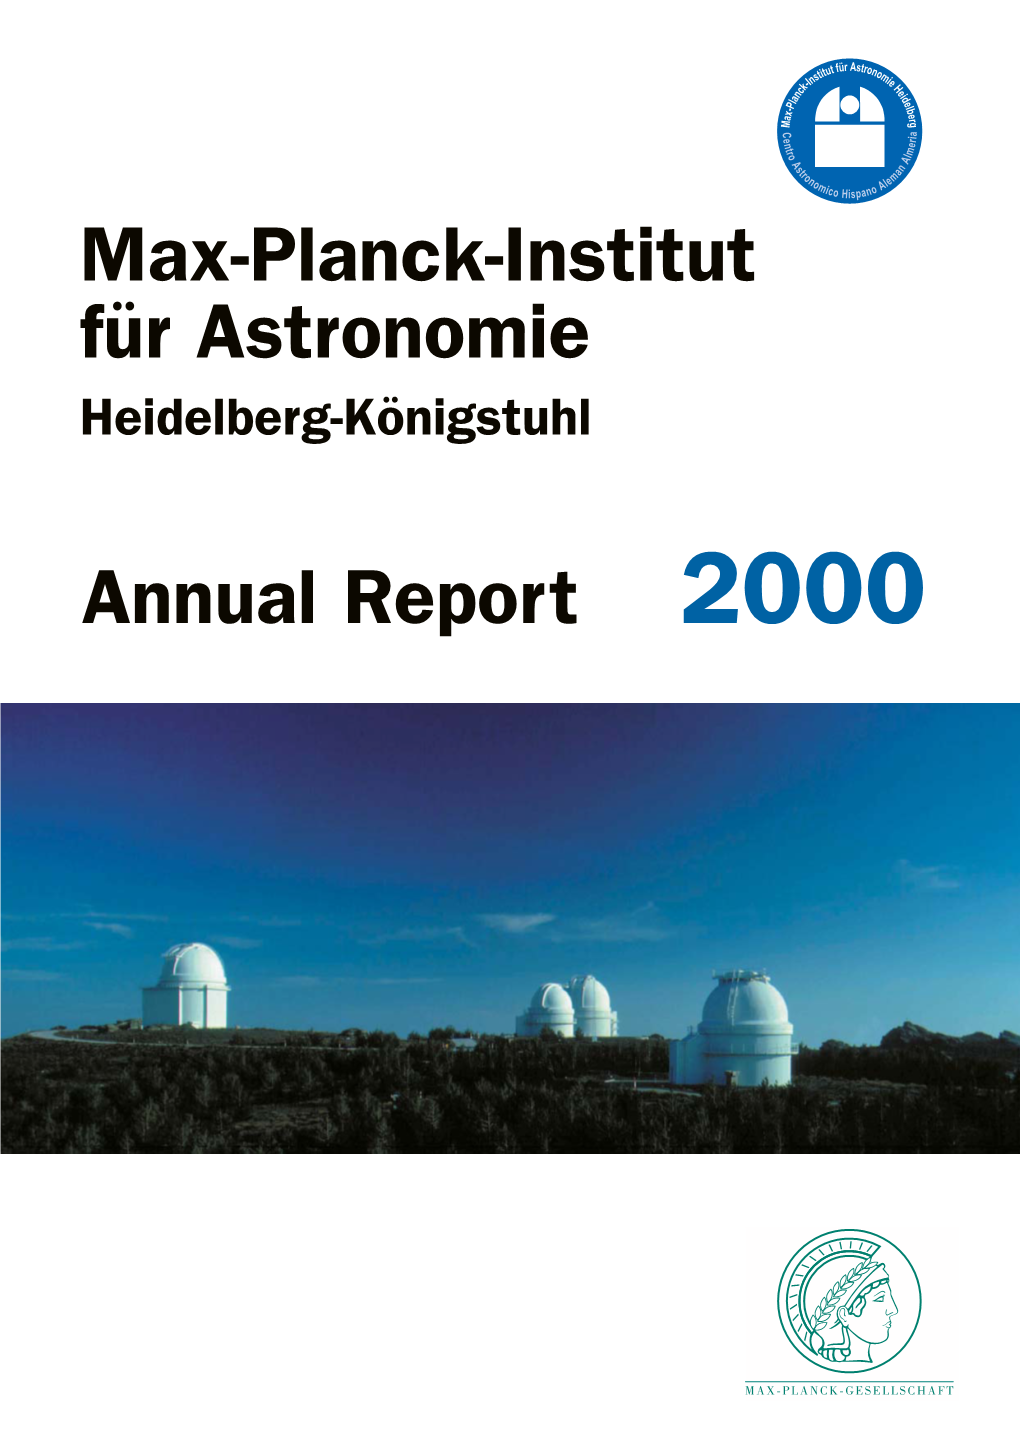 MPIA Annual Report 2000